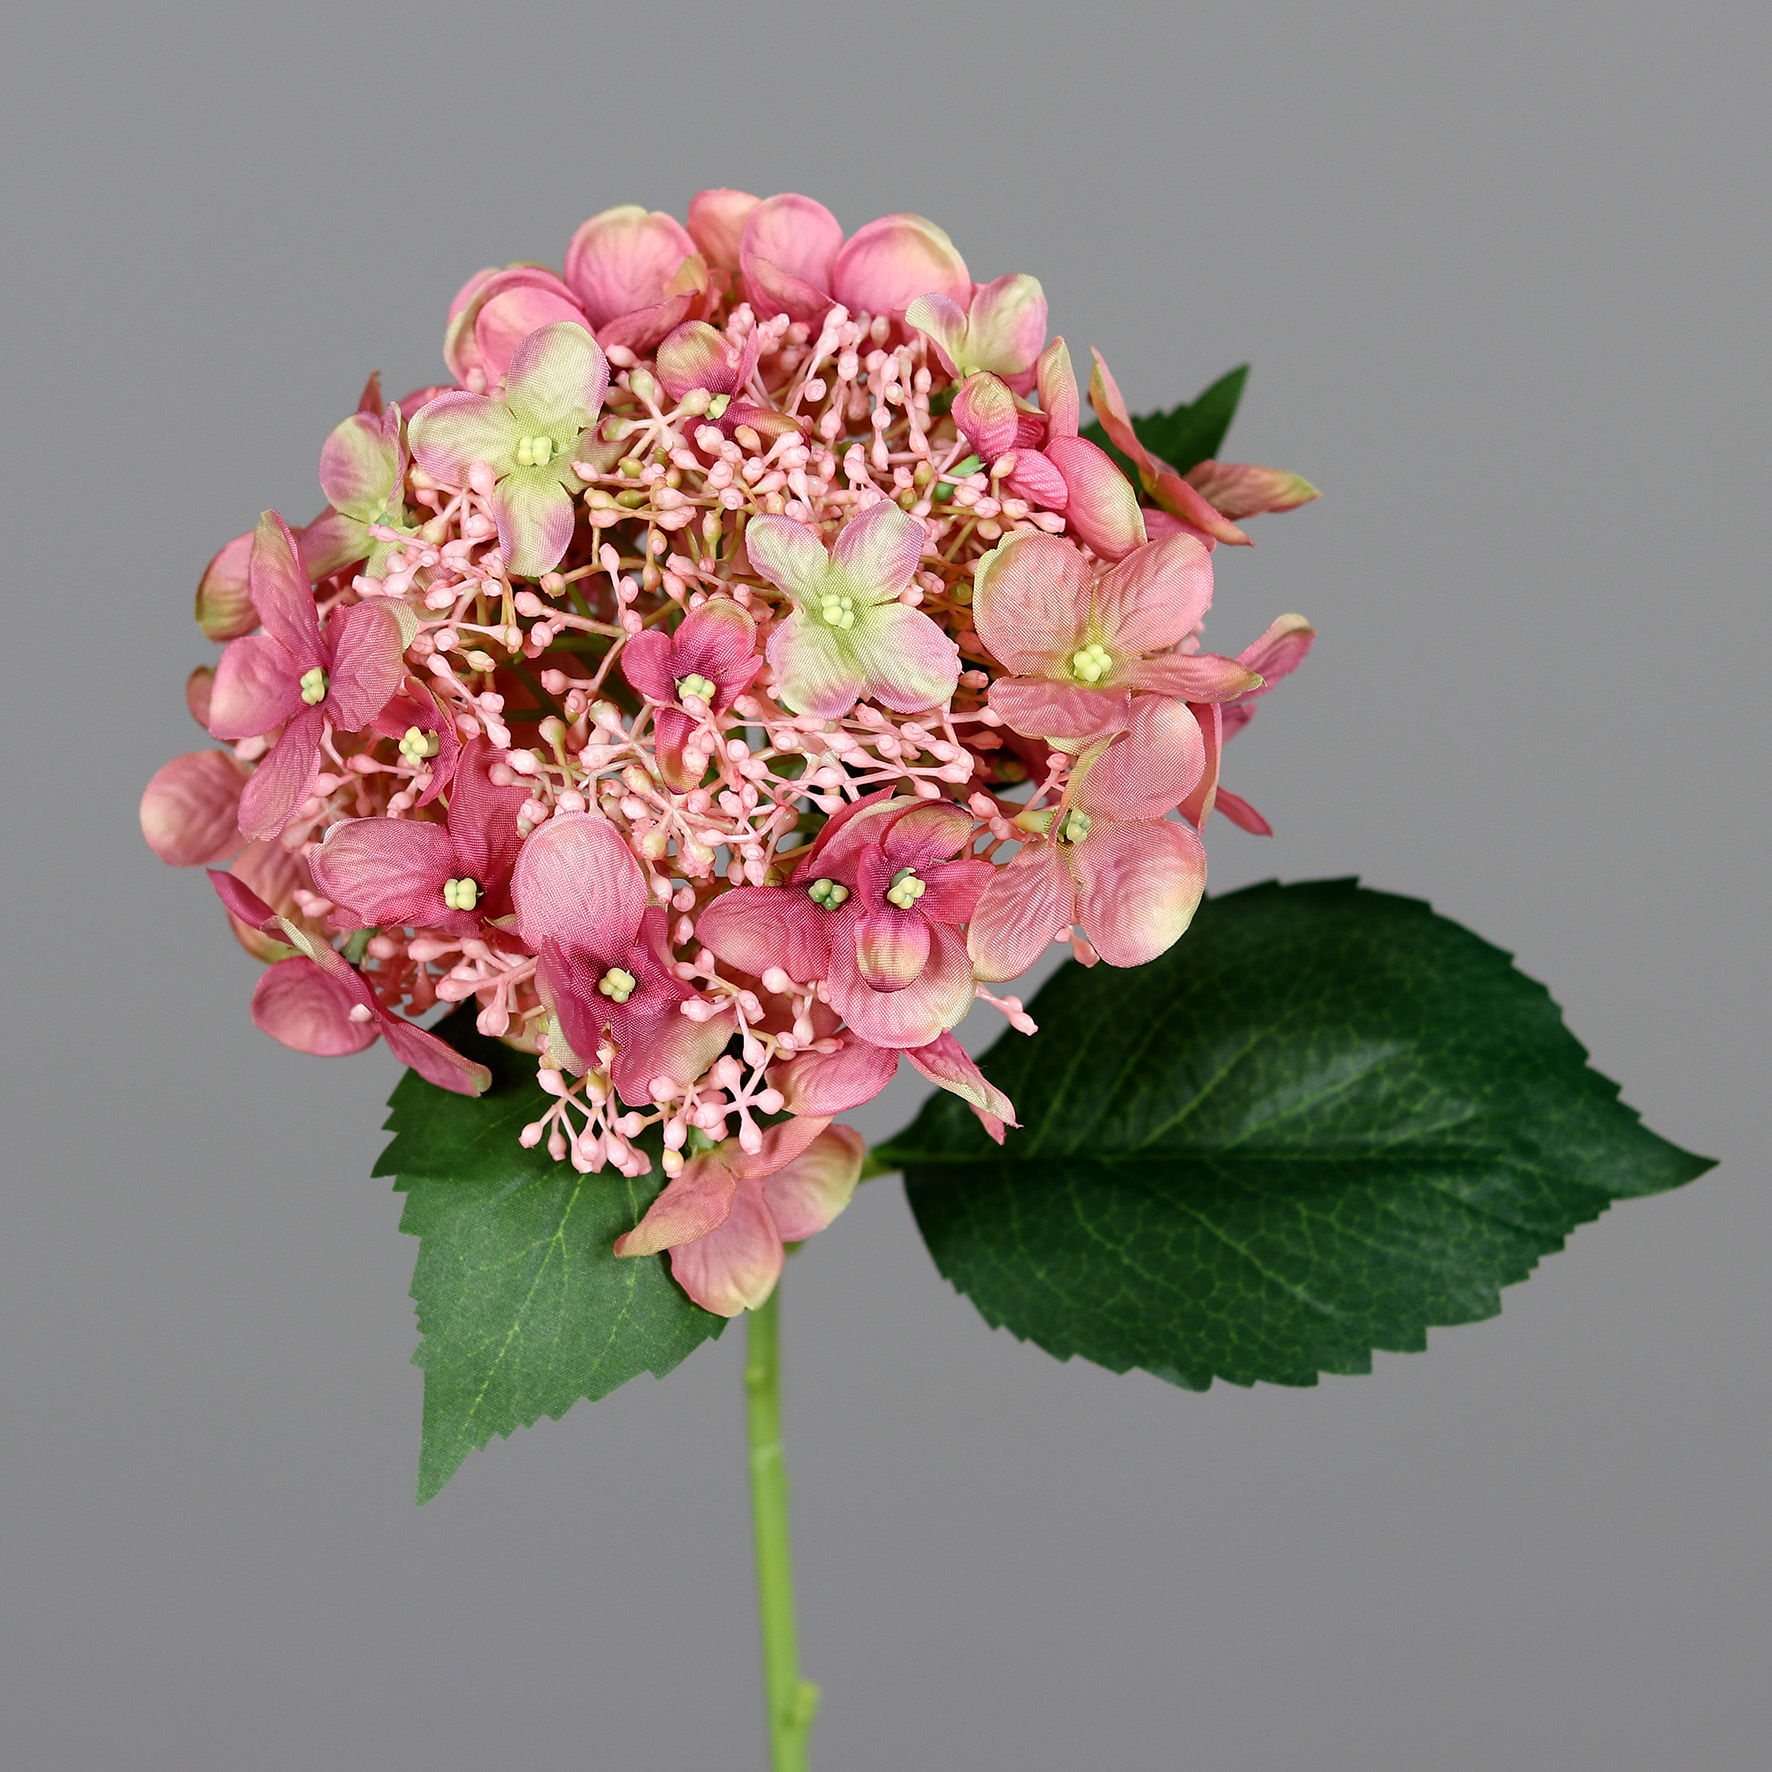 Sommer Hortensie 52cm rosa DP Kunstlbumen künstliche Blumen Hortensien  Hydrangea